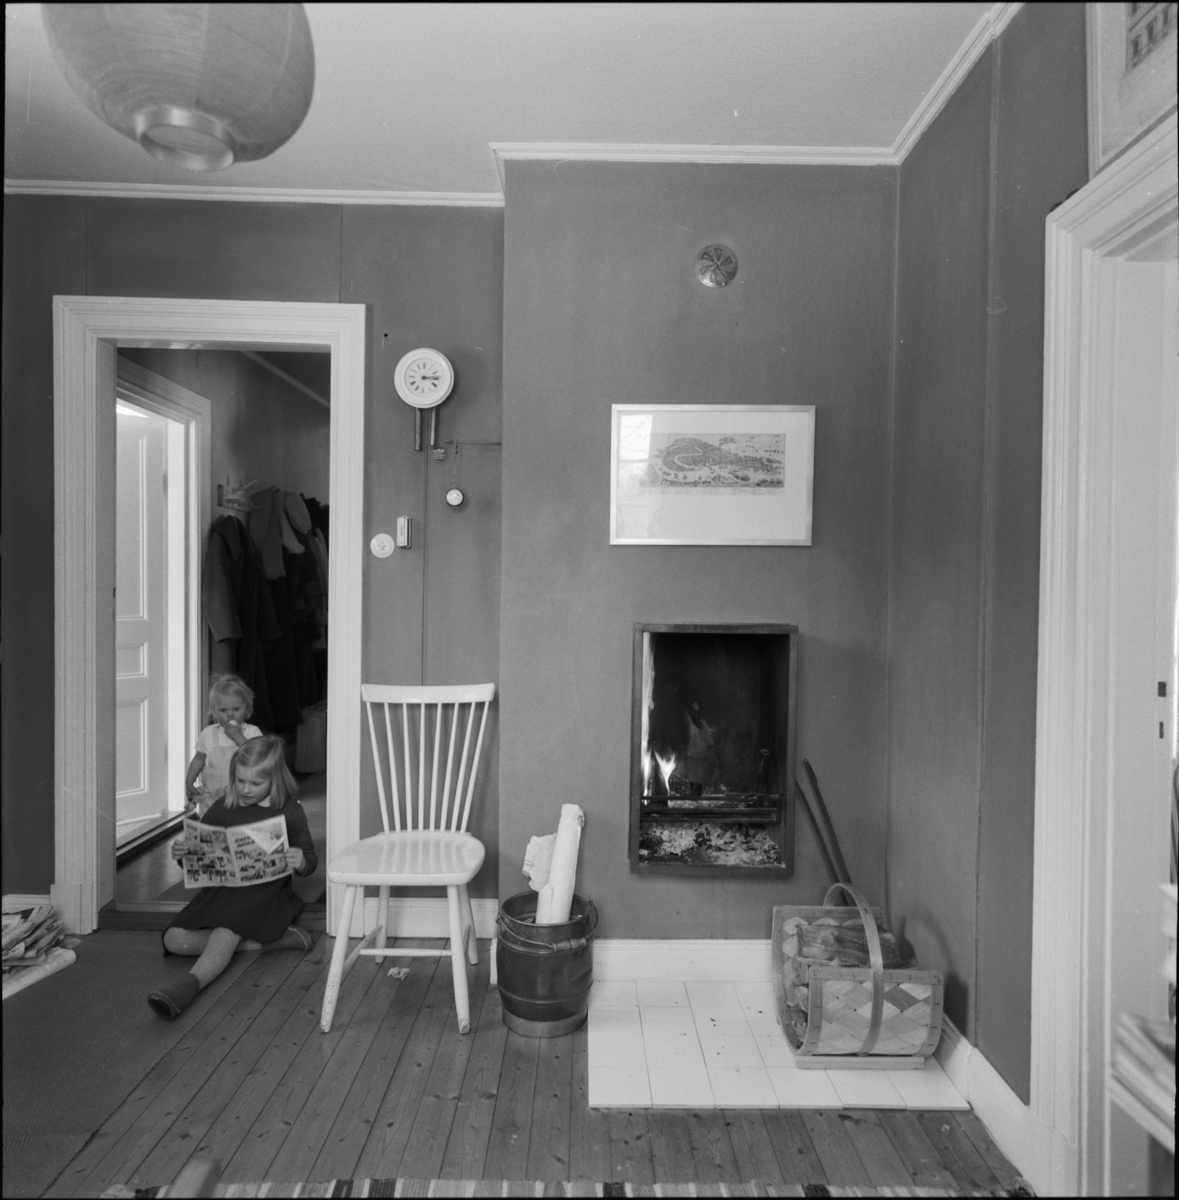 villa Ahlgren
Interiör av rum med braskamin, i dörrhålet läsande flicka